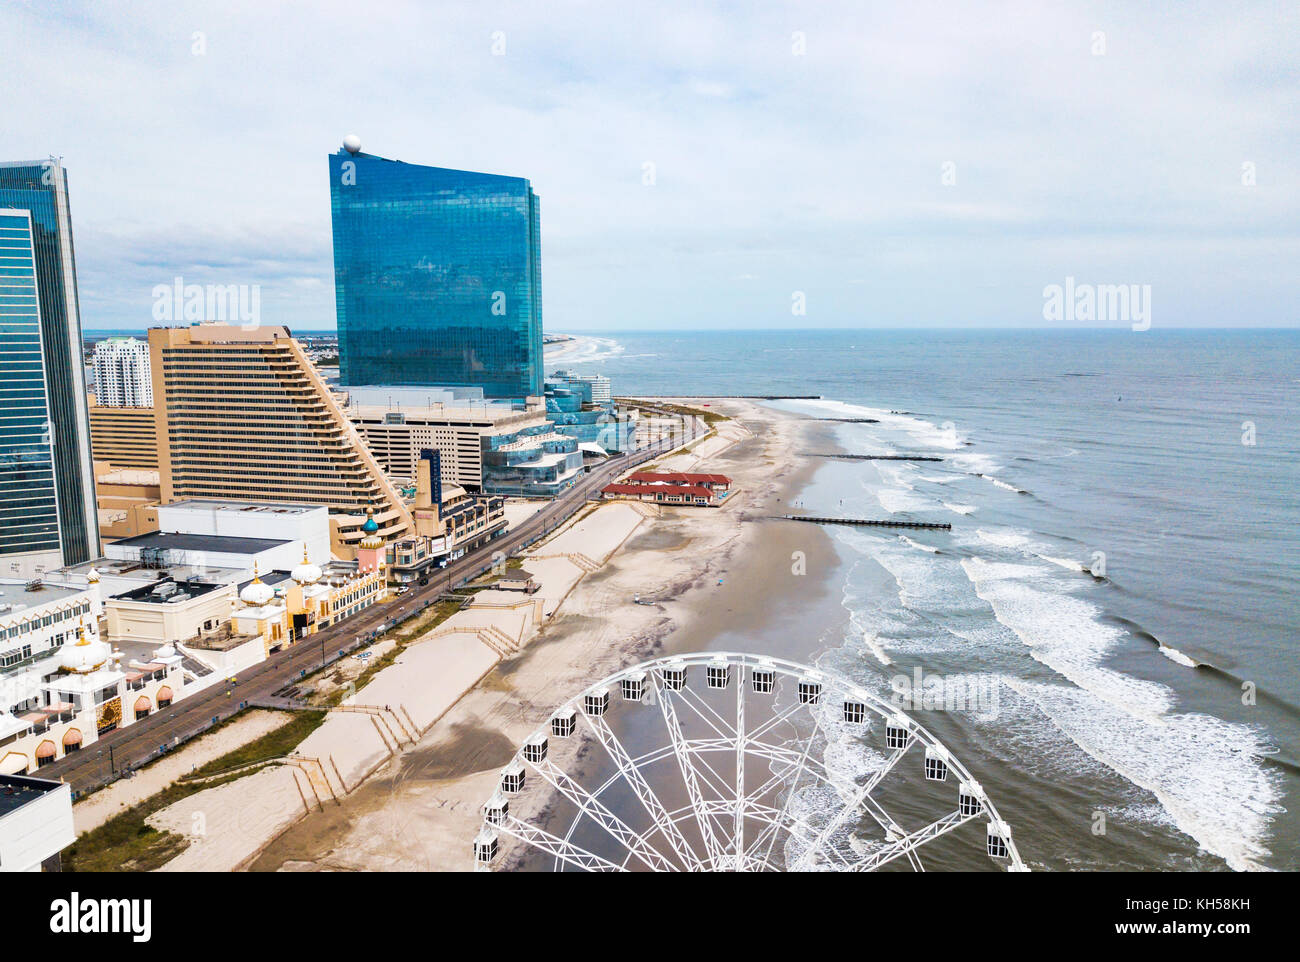 Vista aérea de la línea de flotación de Atlantic City. AC es una ciudad turística en Nueva Jersey famosa por sus casinos, pasarelas, y playas Foto de stock